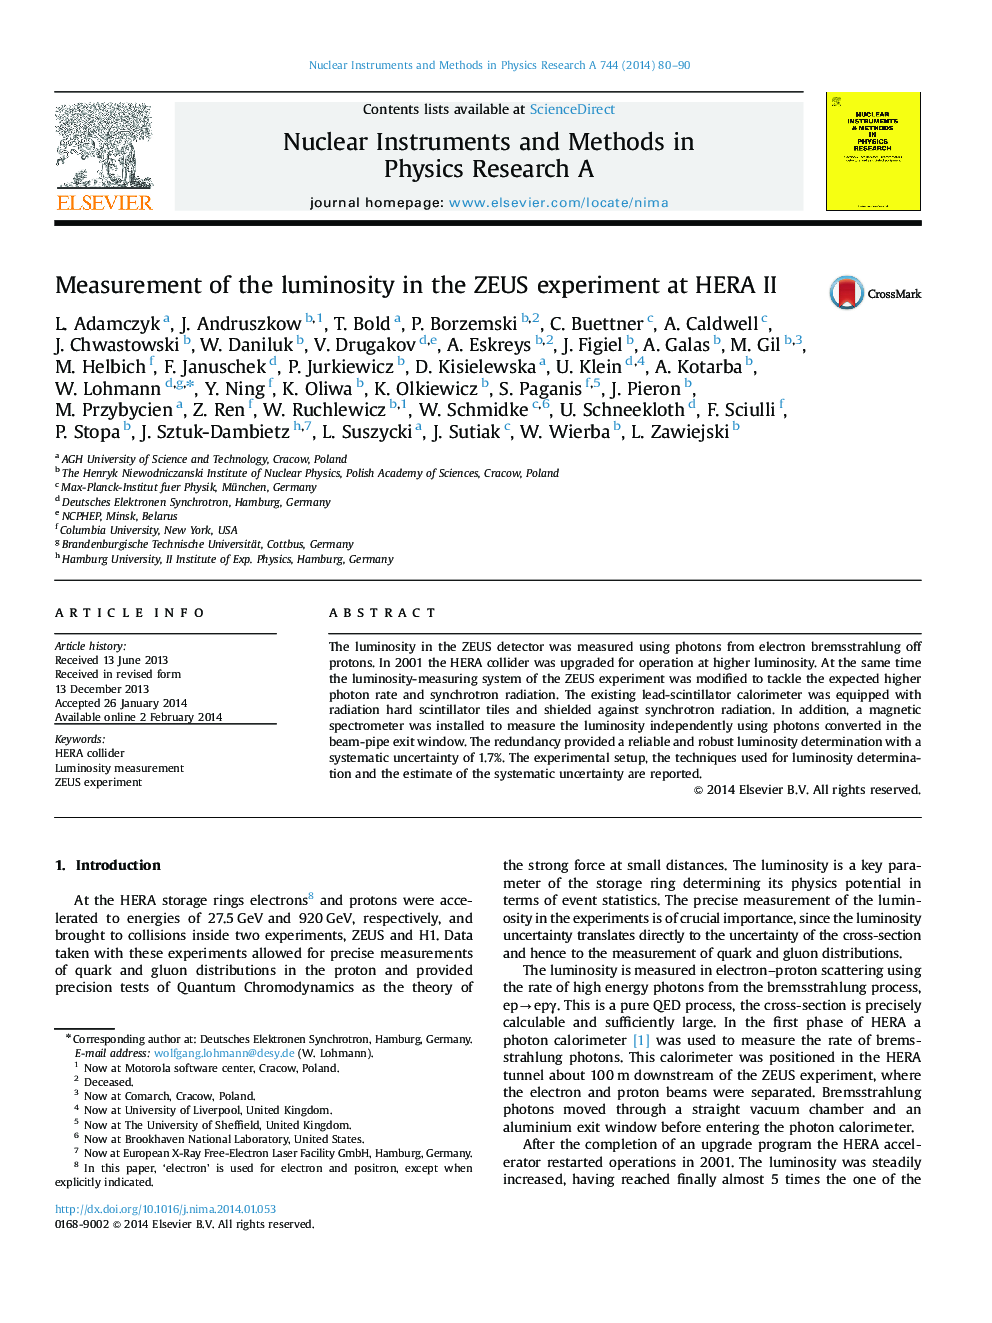 Measurement of the luminosity in the ZEUS experiment at HERA II